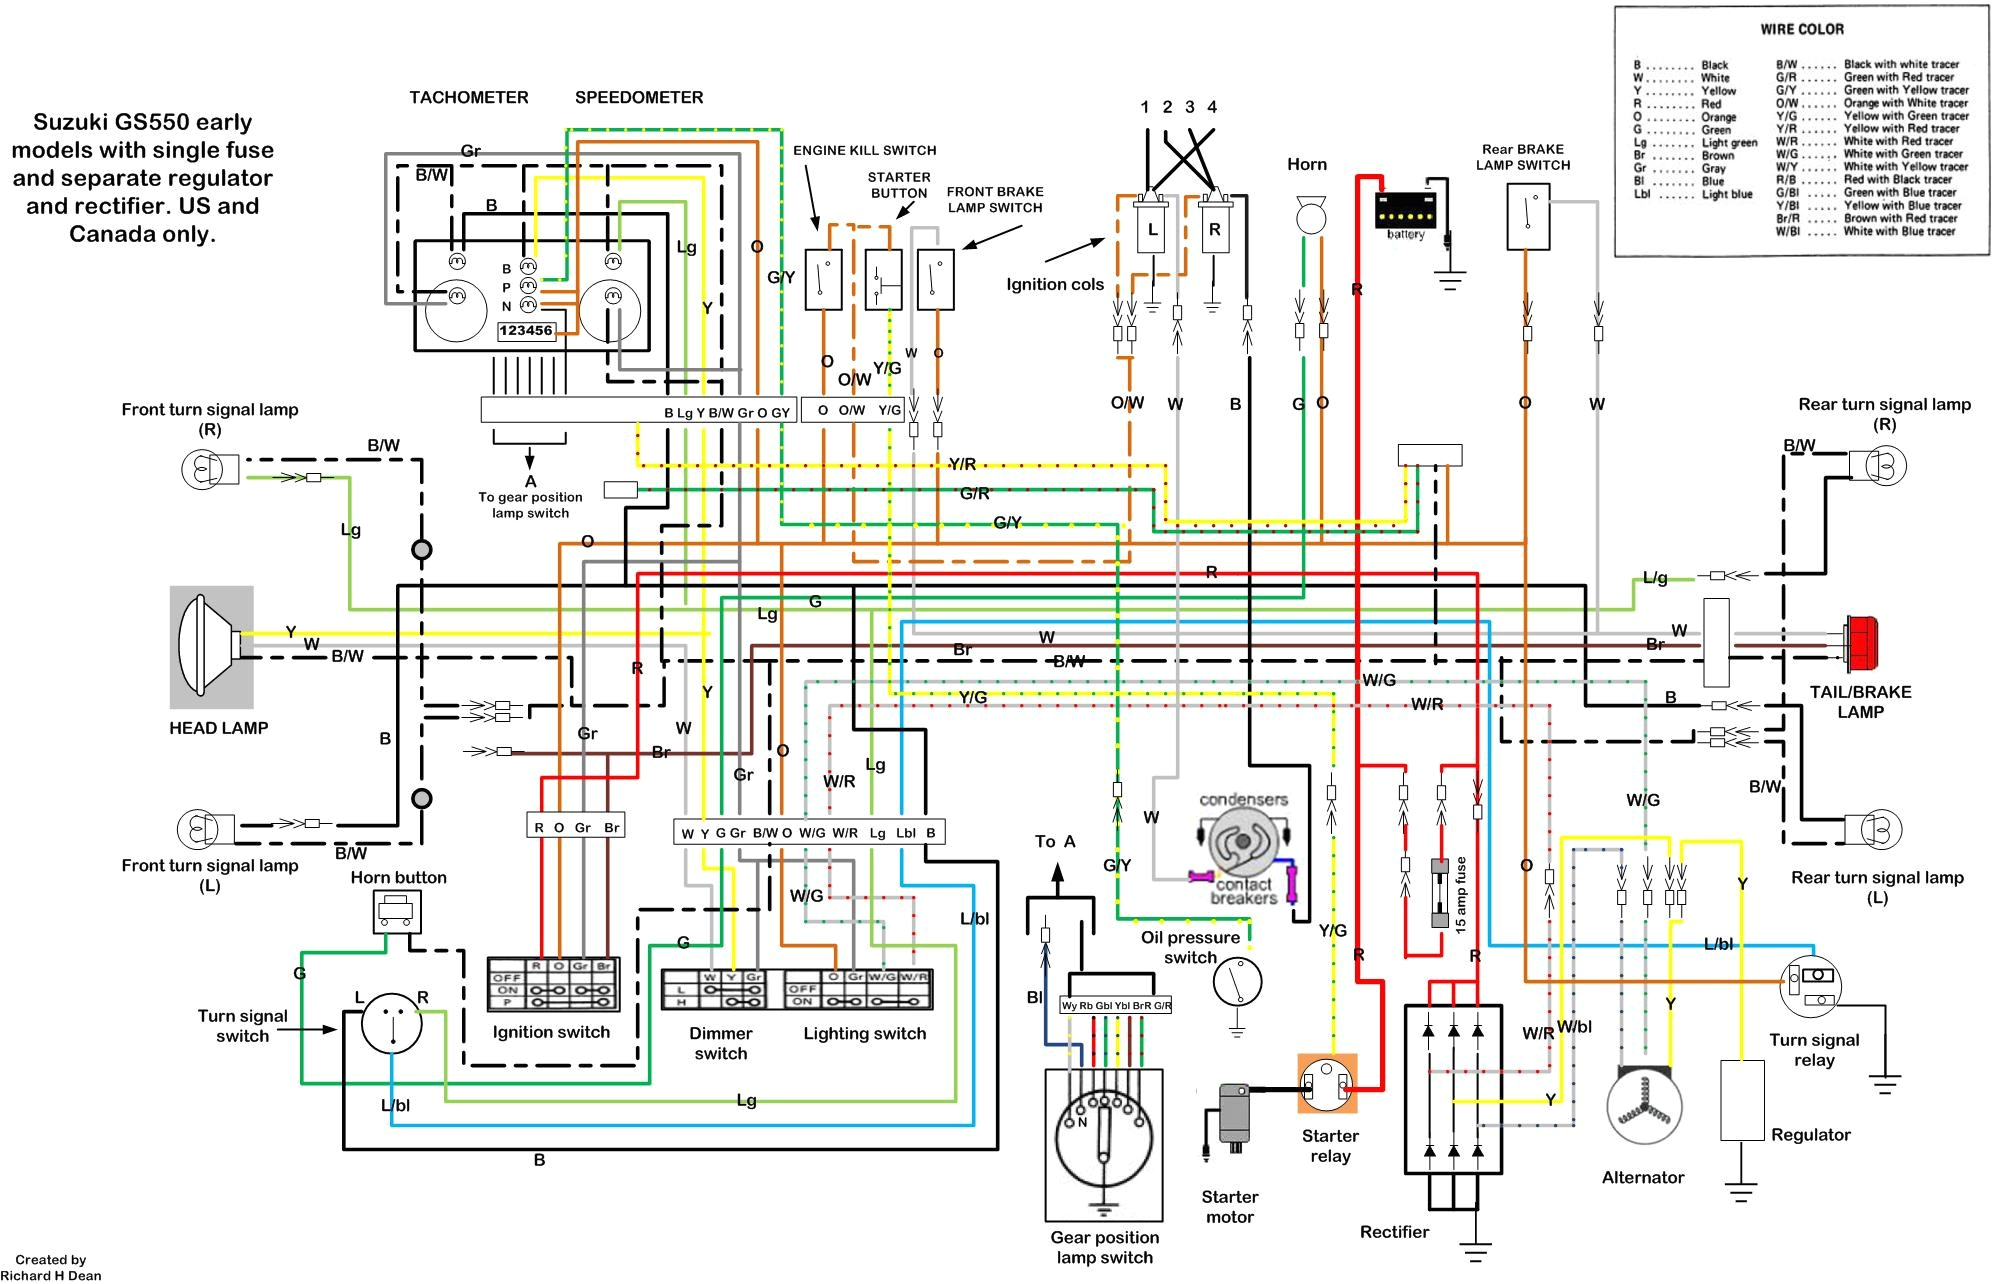 suzuki motorcycle wiring diagram new 1983 l9000 wiring schematic wiring diagrams schematics of suzuki motorcycle wiring diagram jpg